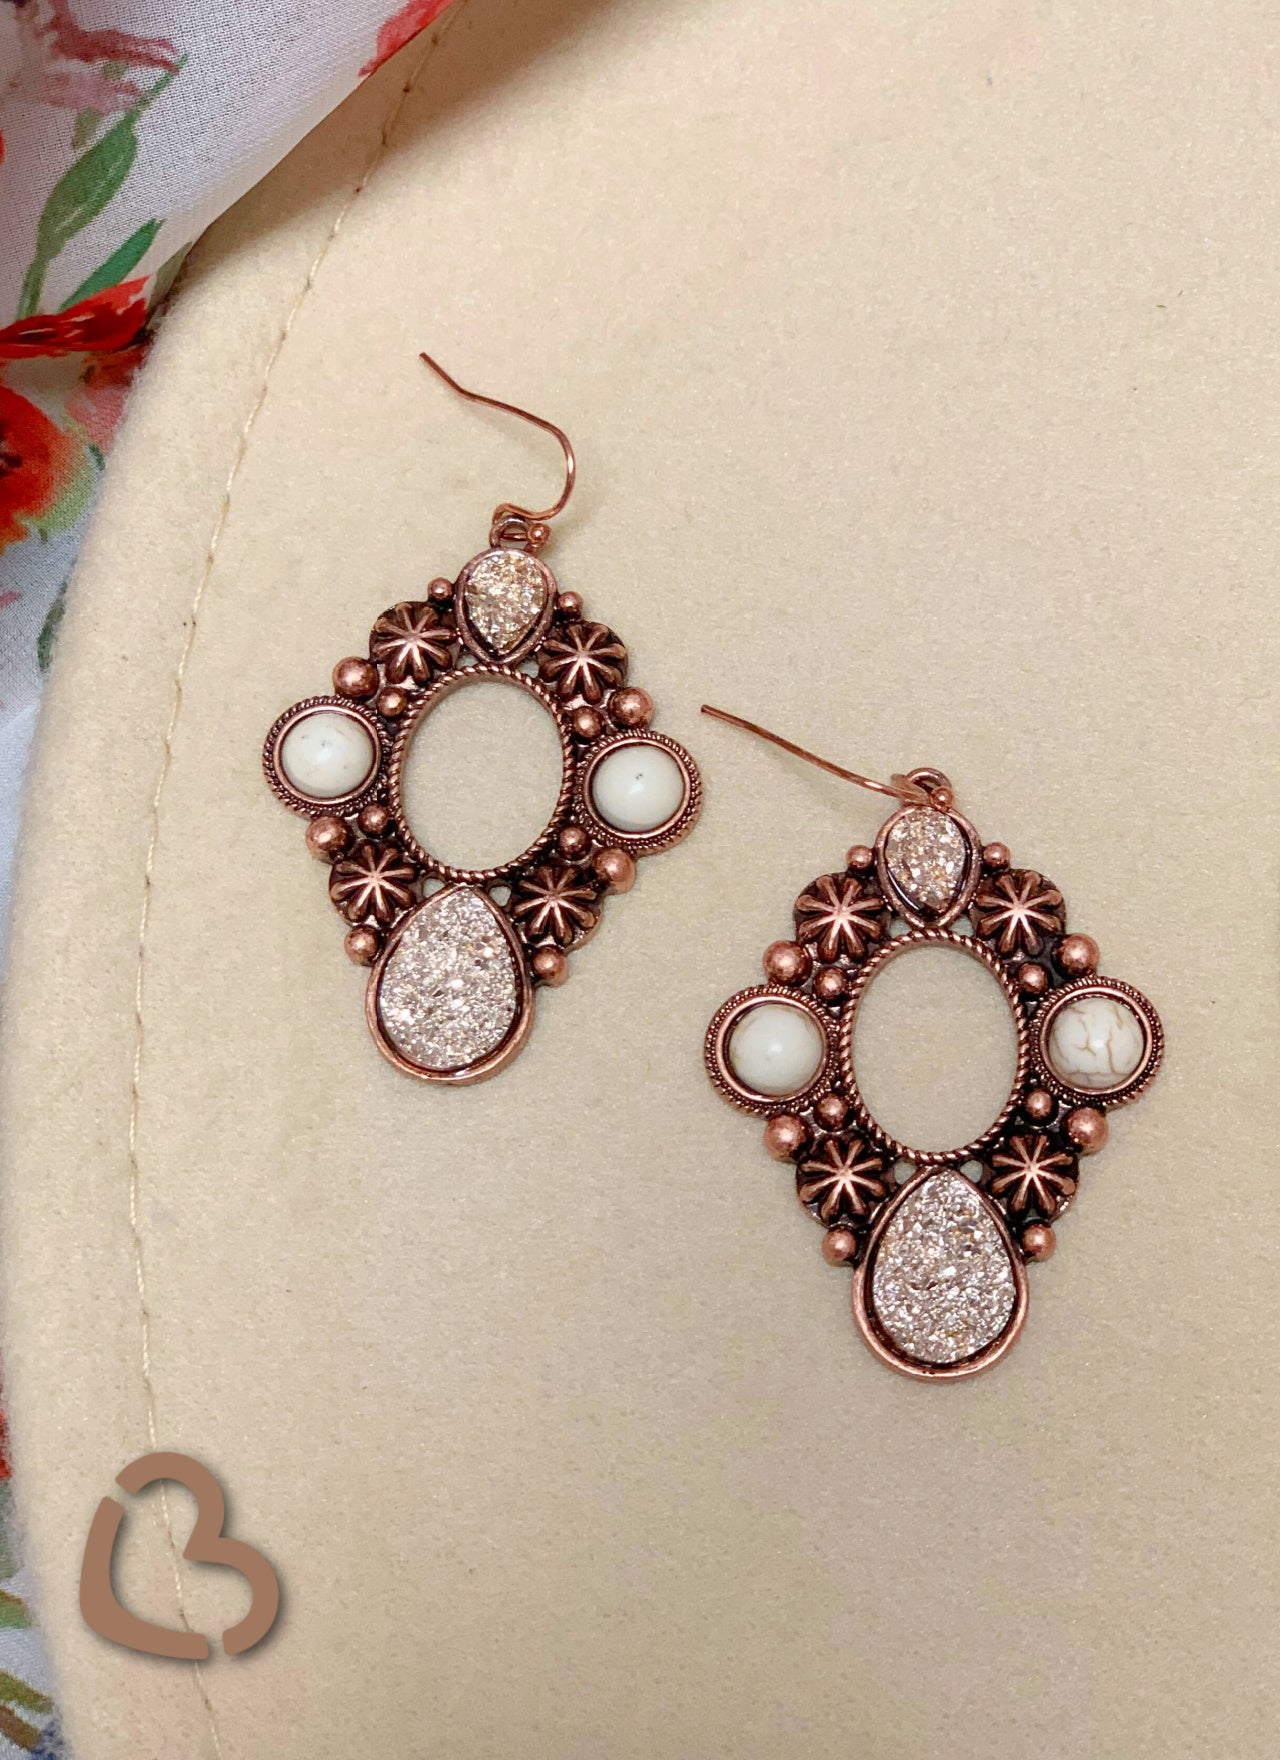 The Kingston Druzy Earrings in Copper Jewelry 176 